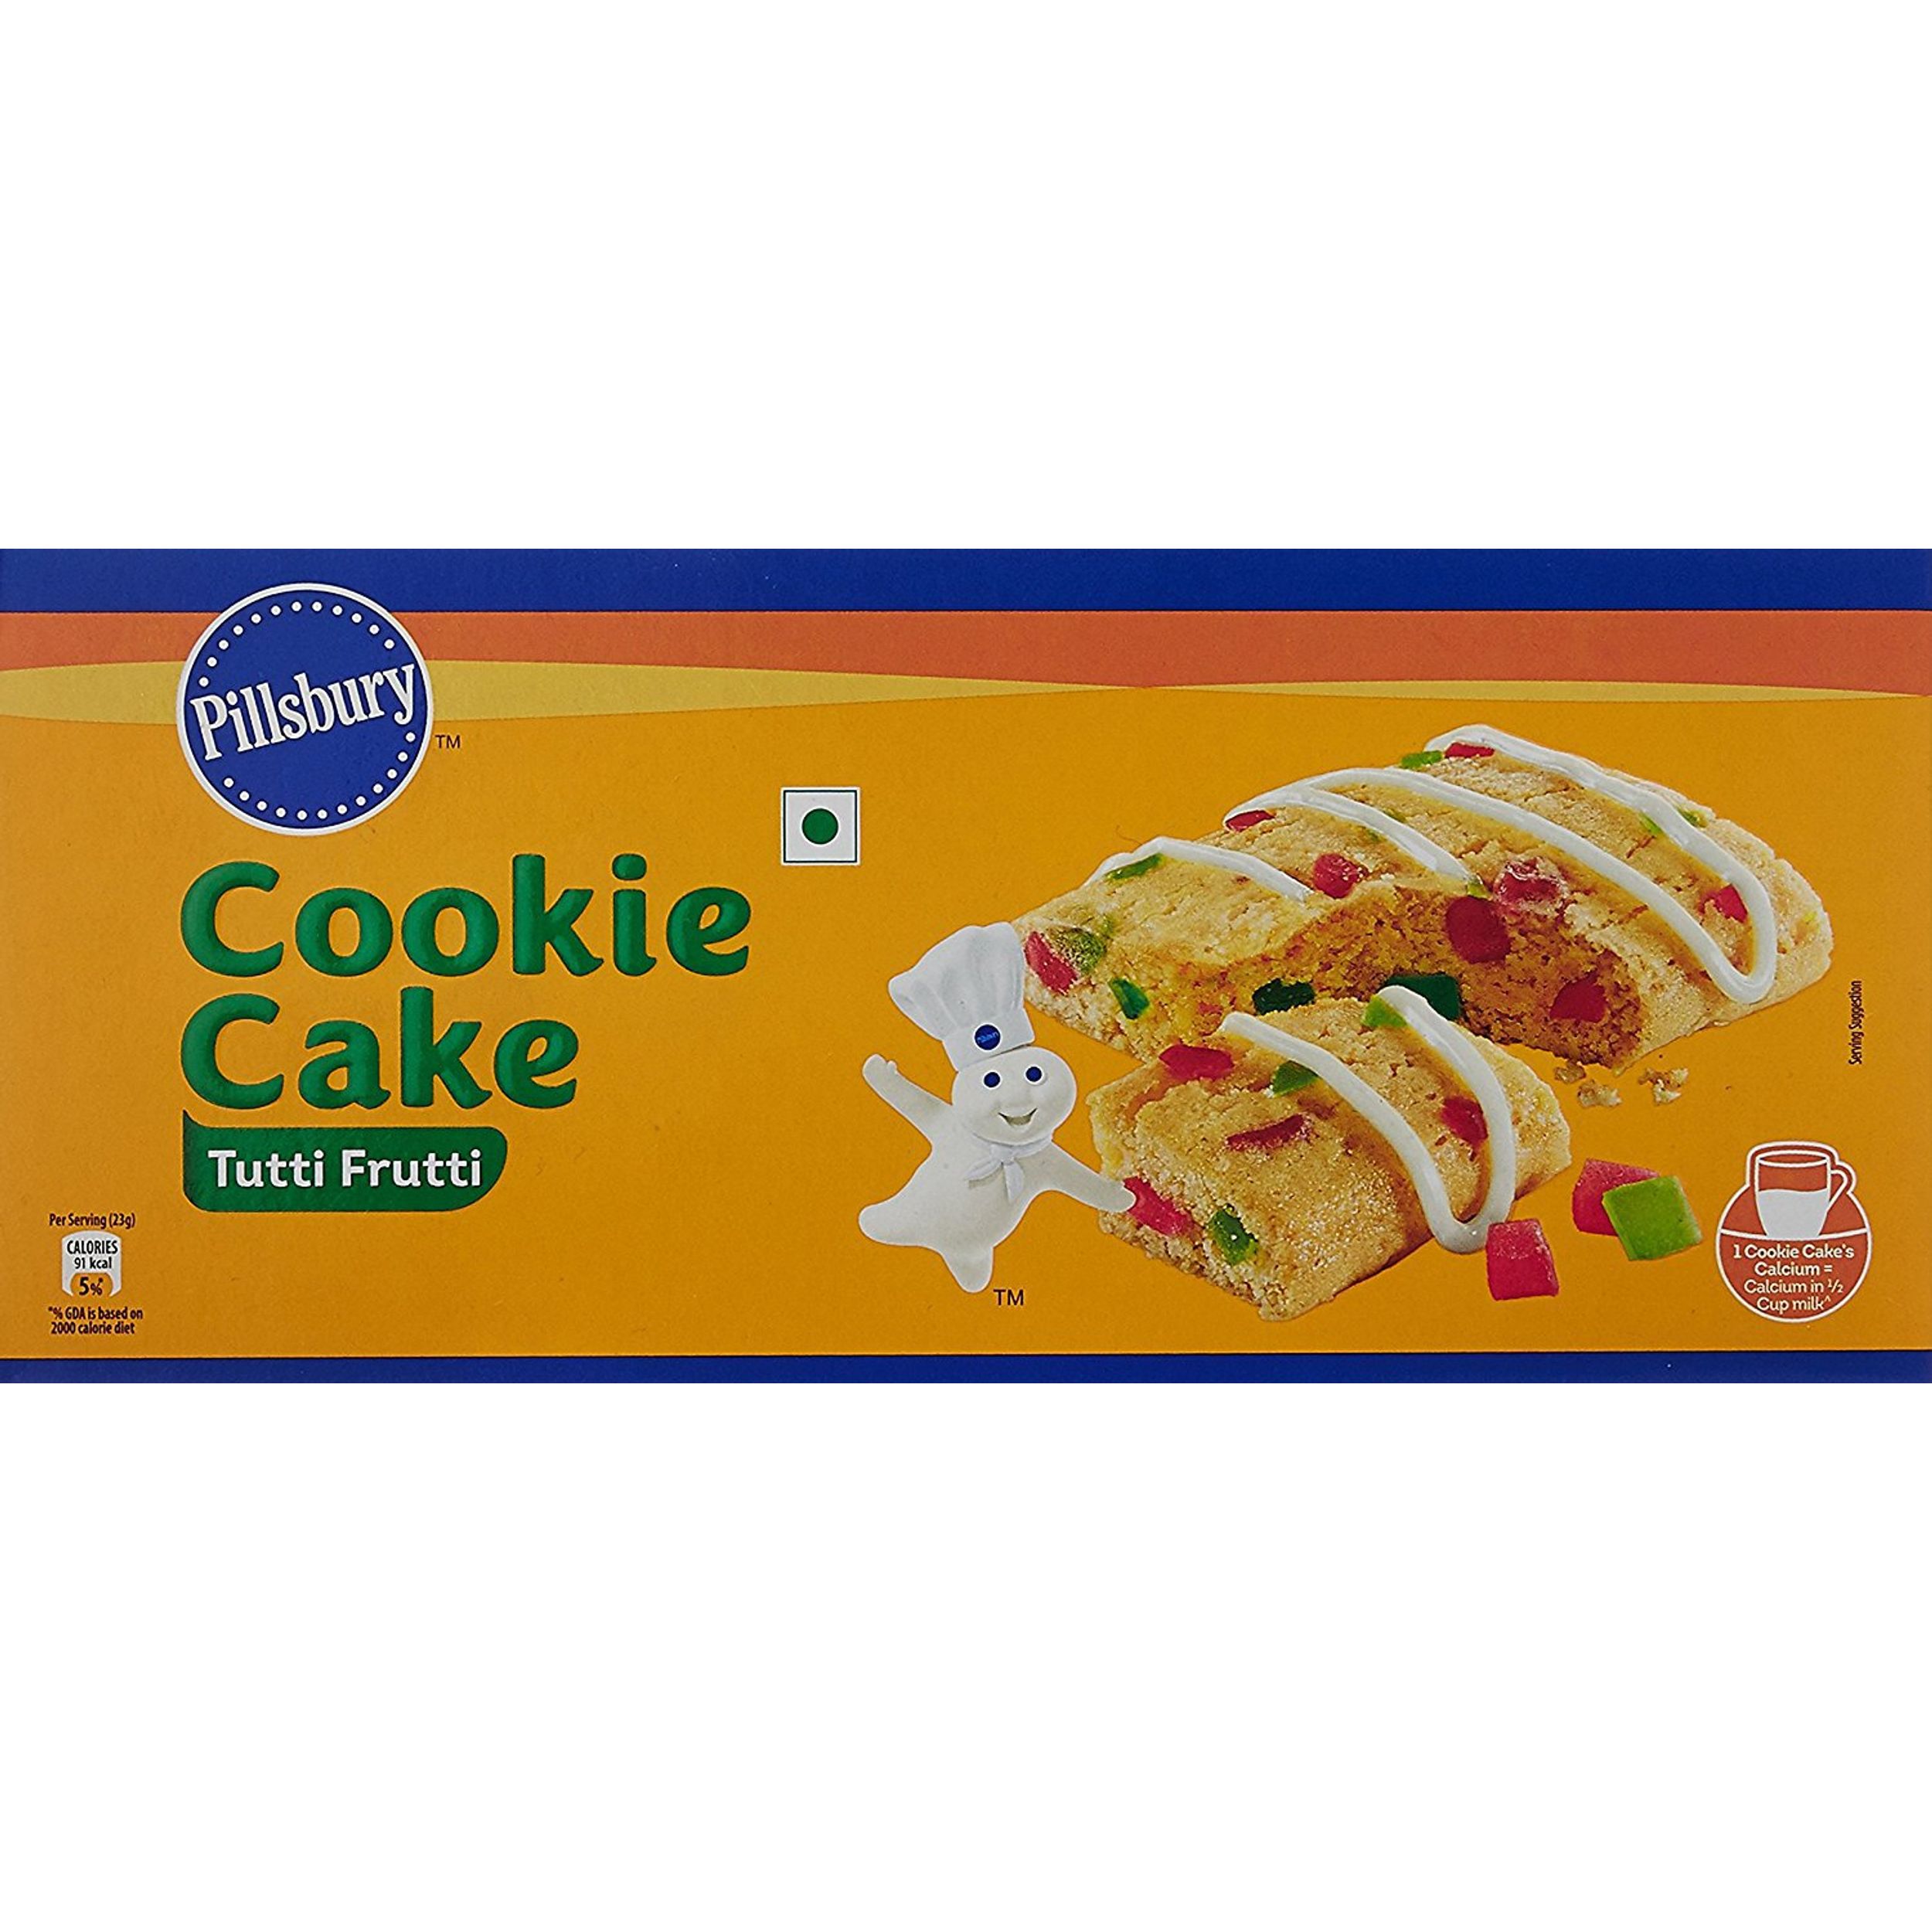 Pillsbury Cookie Cake Greetings Pack, 388g : Amazon.in: Grocery & Gourmet  Foods